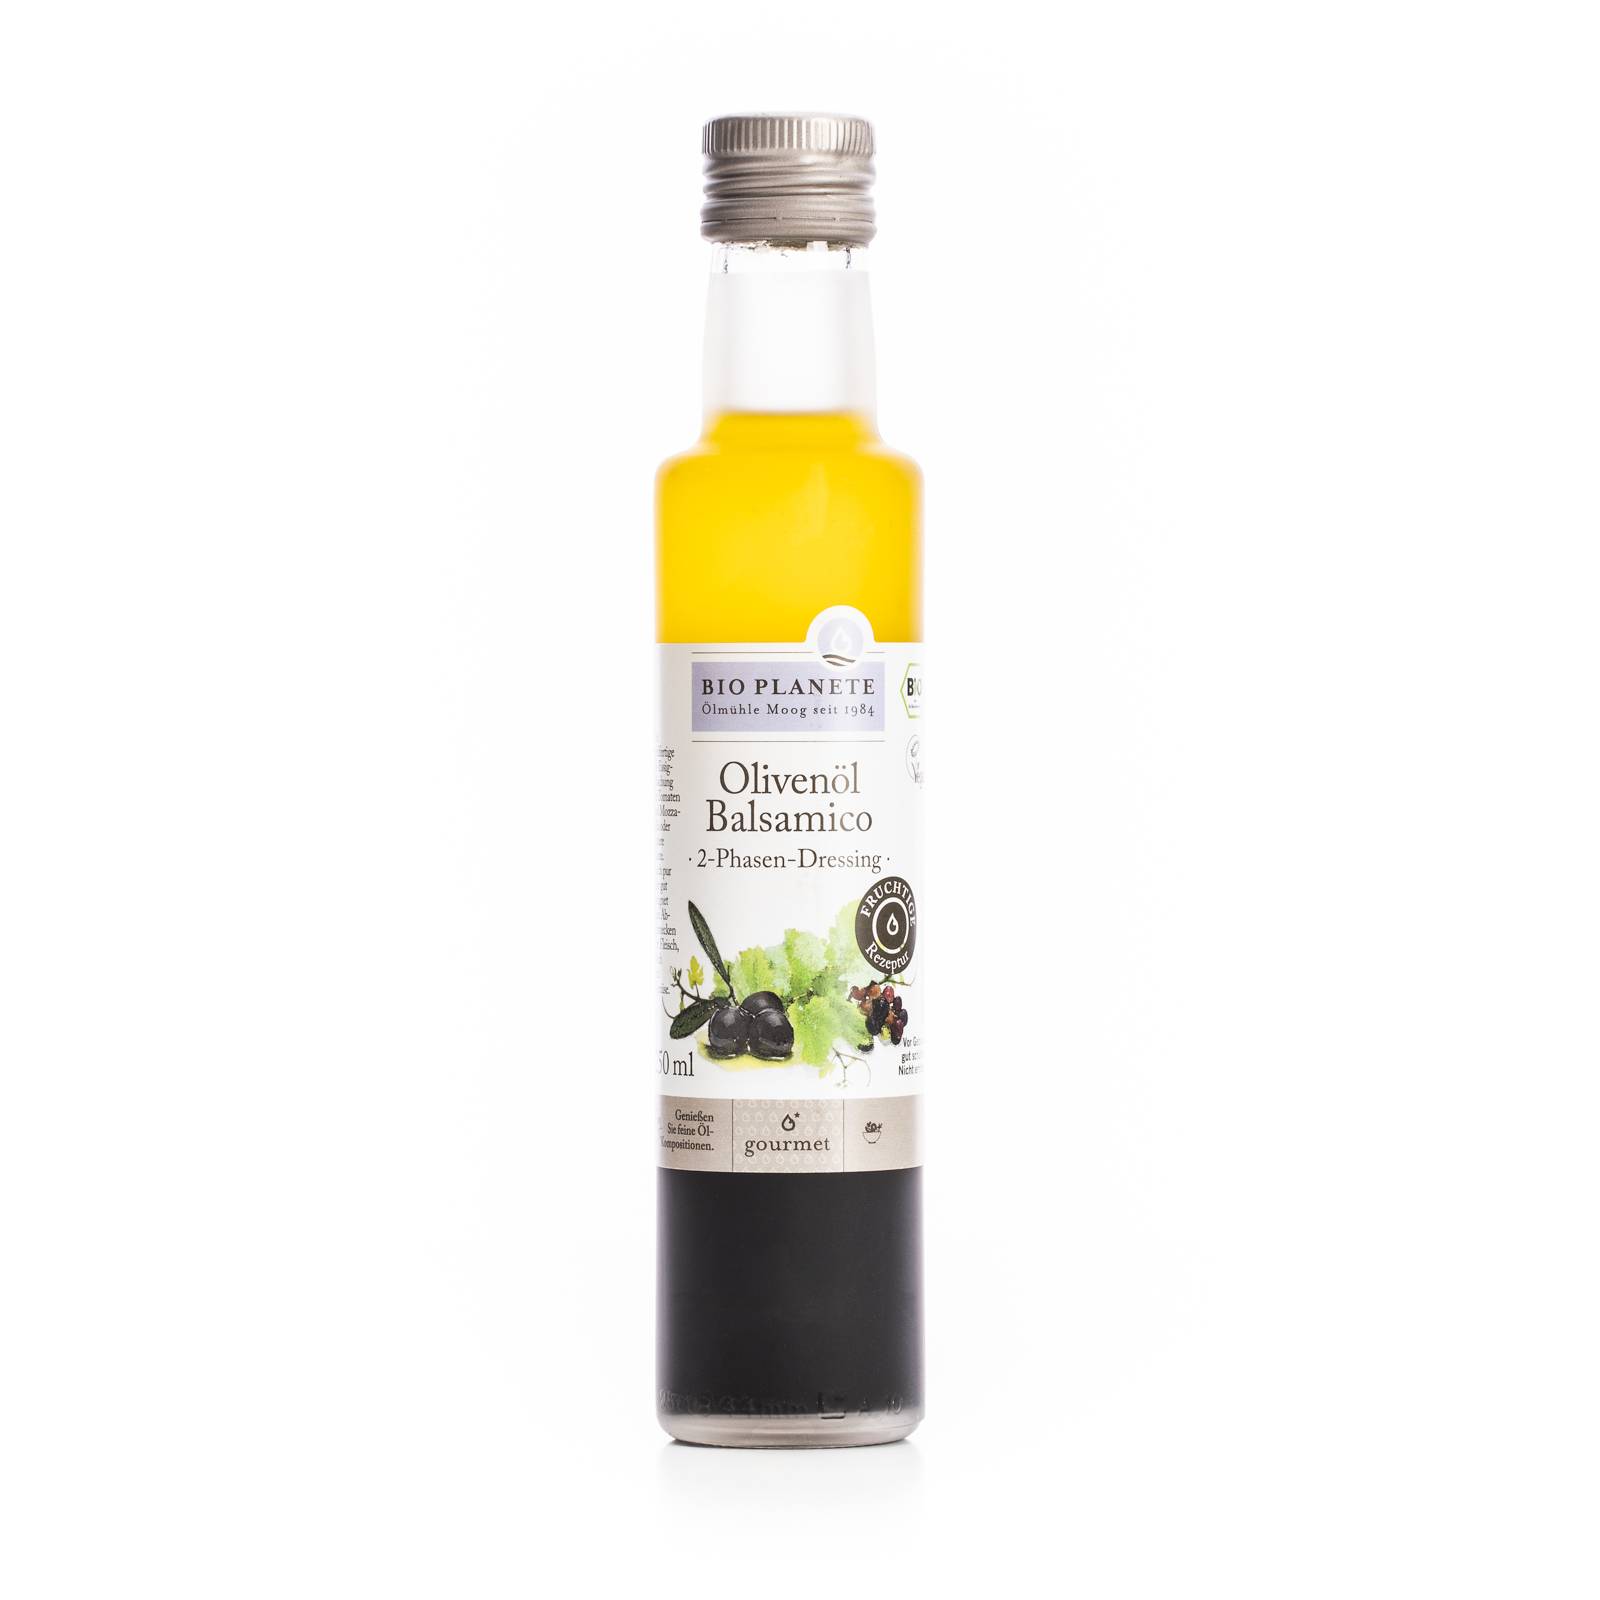 l_bio_planete_olivenoel_balsamico_250ml Oele & Essig - Olivenöl & Balsamico - Hofladen Altkö